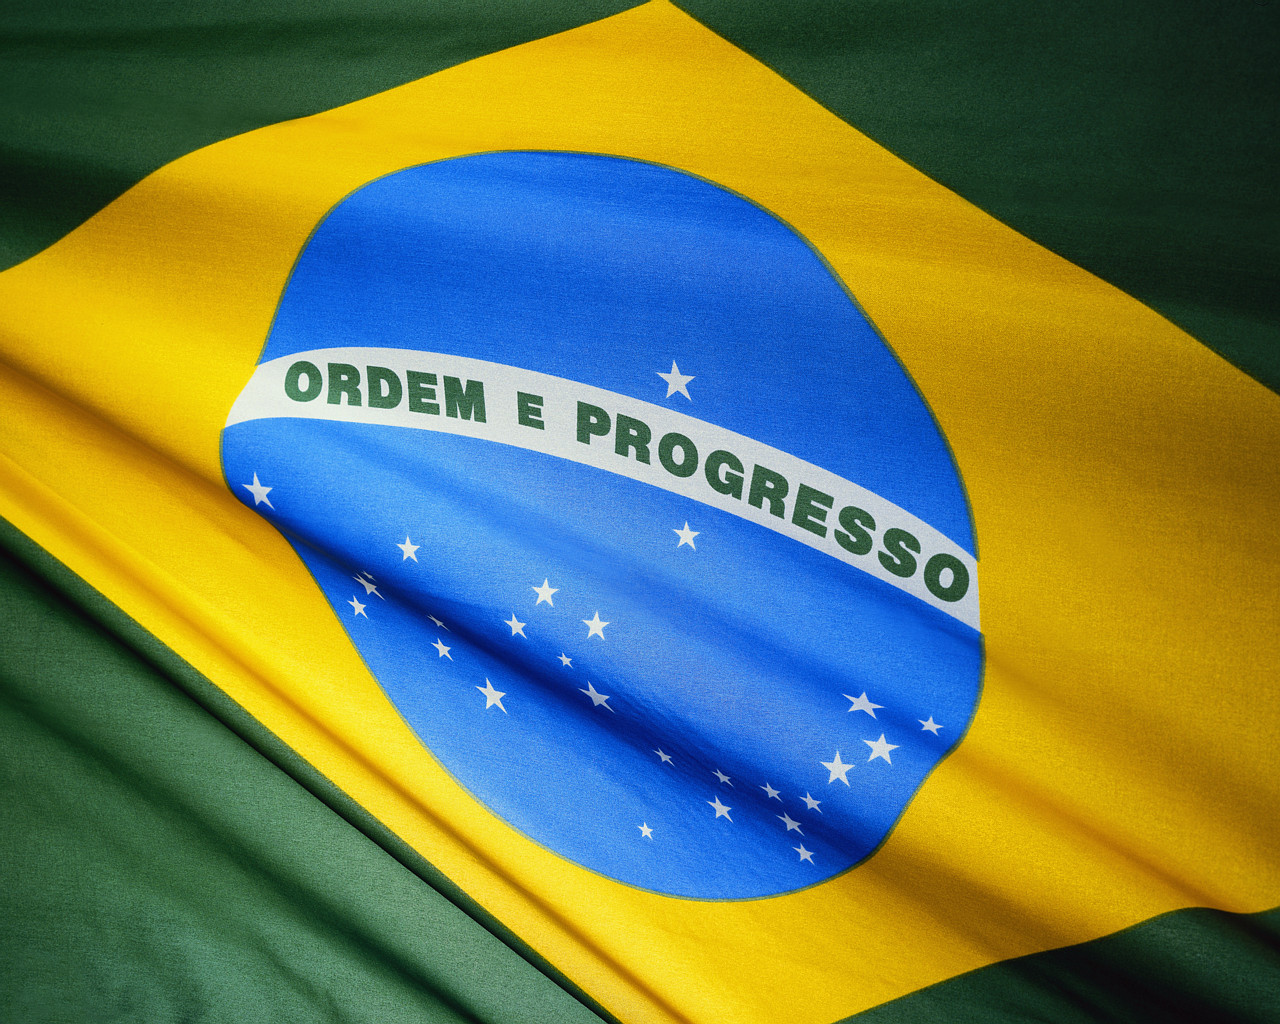 ブラジル連邦協和国の国旗の色の意味と由来 ブラジル総合情報サイト ブラジルの生活と暮らしについて